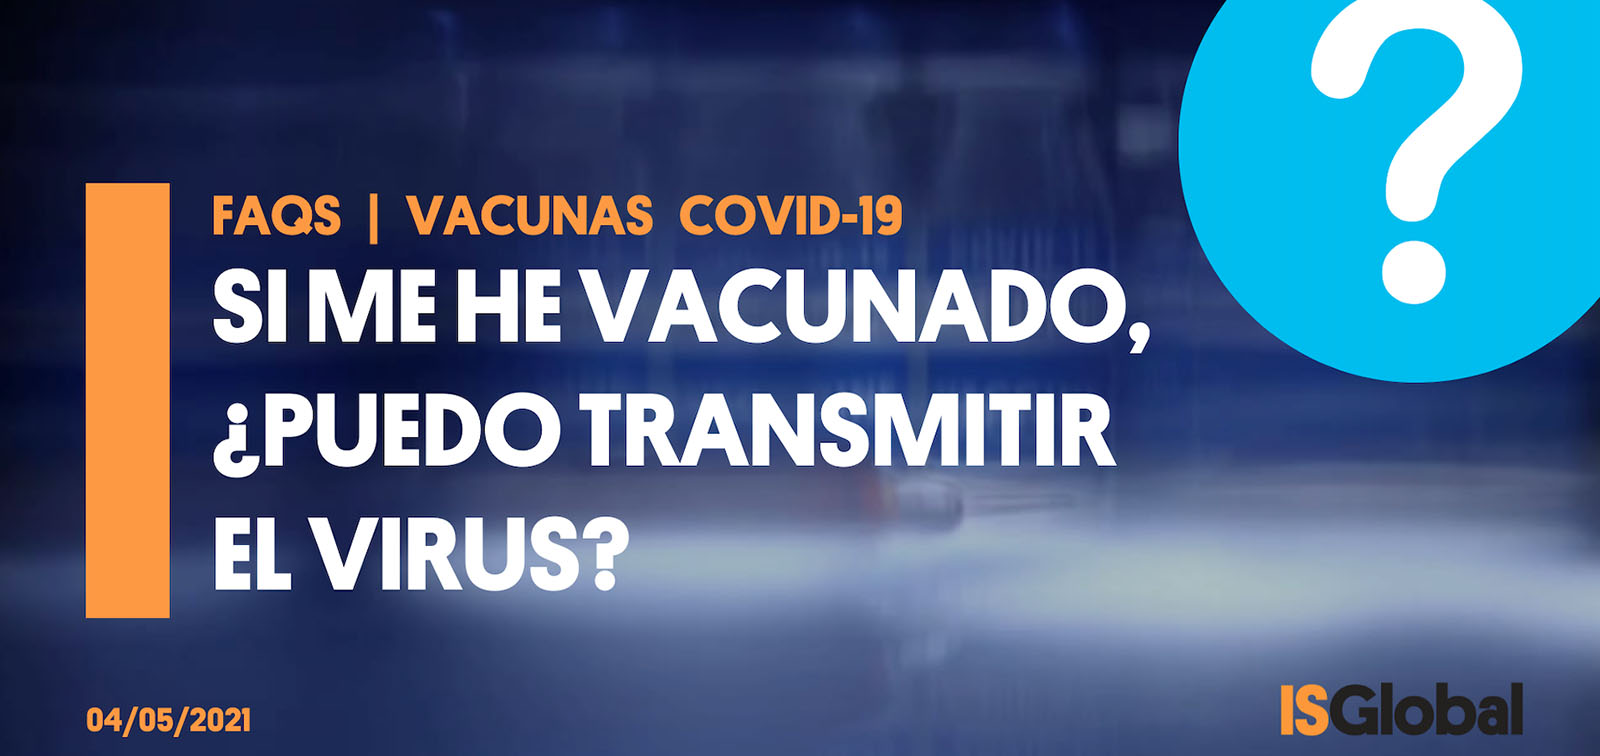 Si me he vacunado de la COVID-19, ¿puedo transmitir el coronavirus?